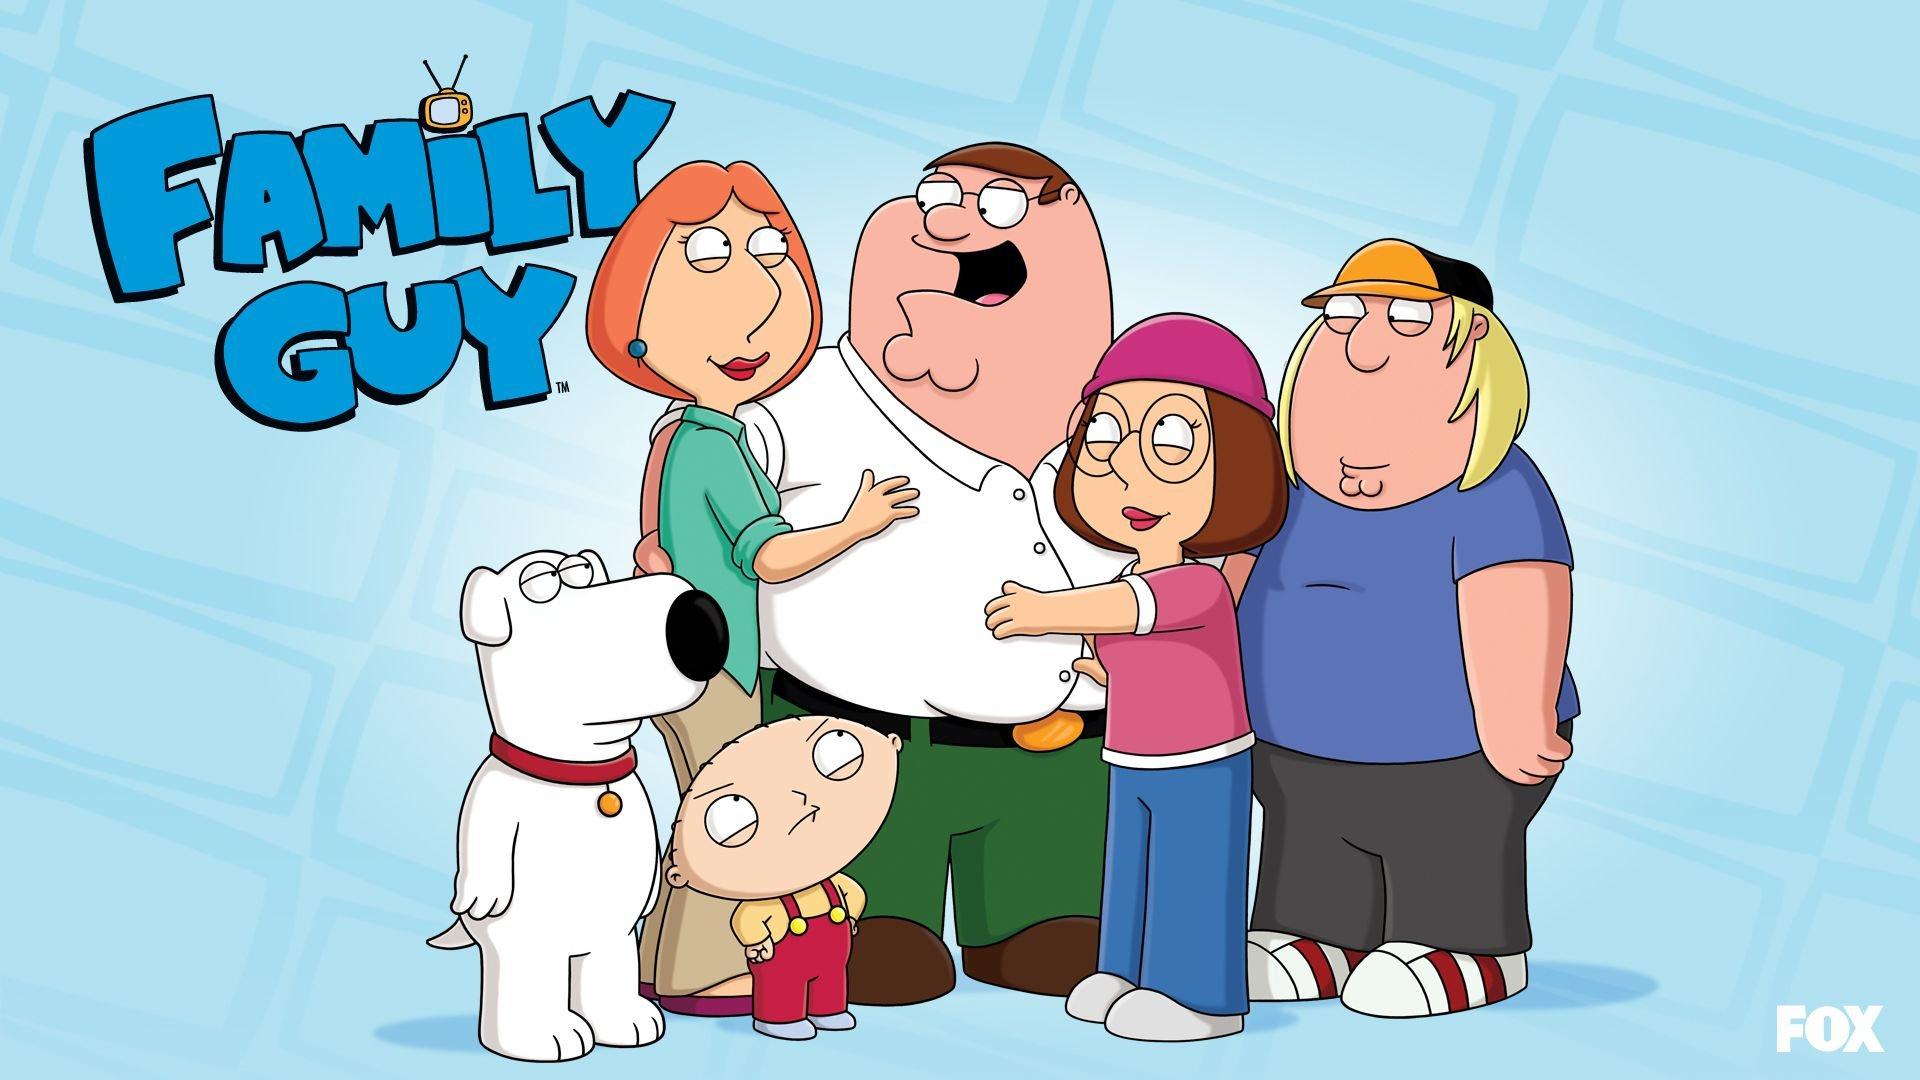 Family Guy wallpaper HD for desktop background